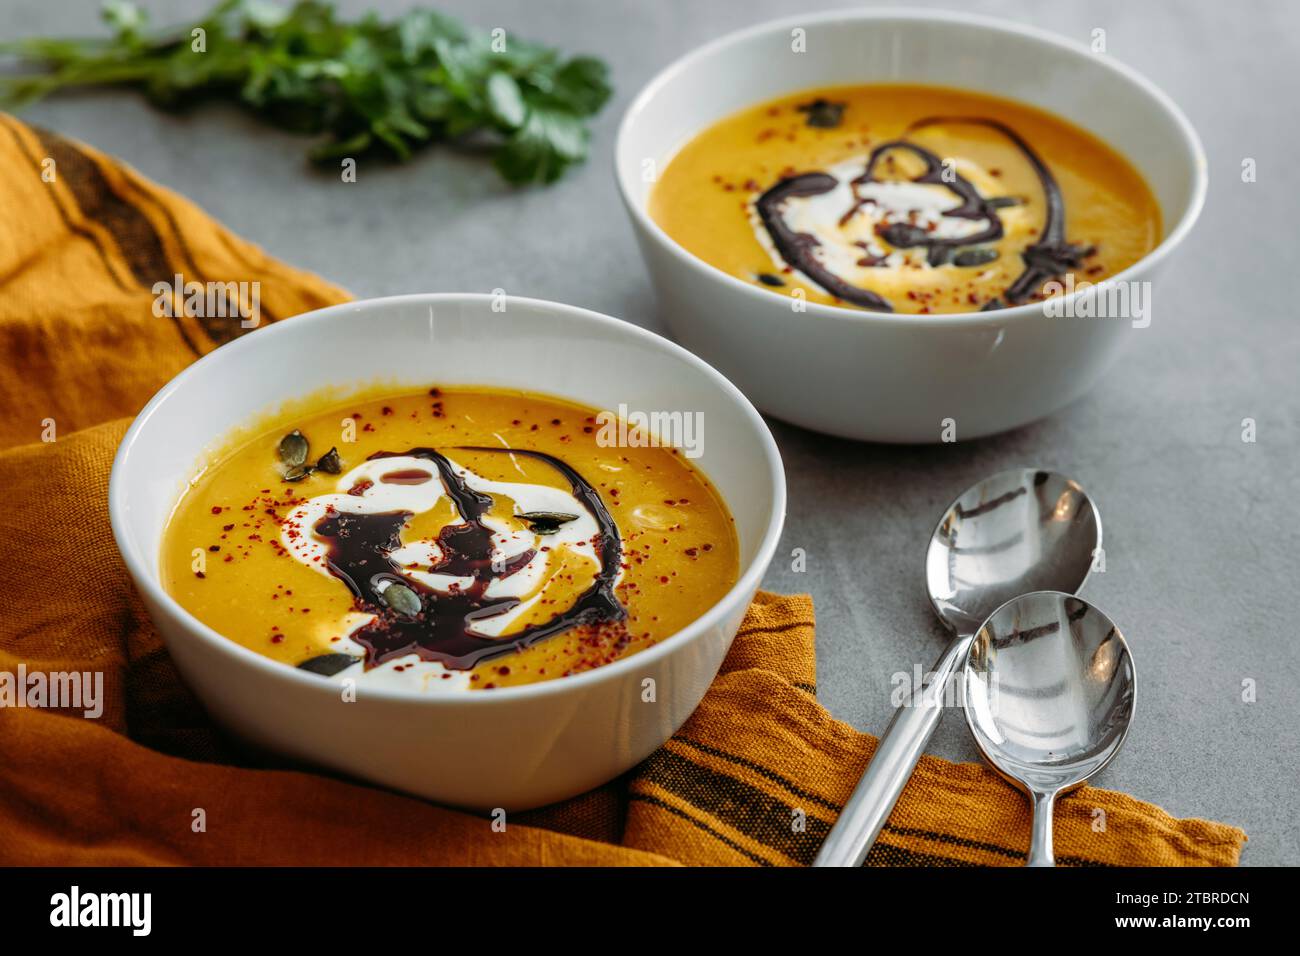 Ciotole con zuppa di zucca fatta in casa con panna, olio di zucca e semi come condimento e coriandolo Foto Stock